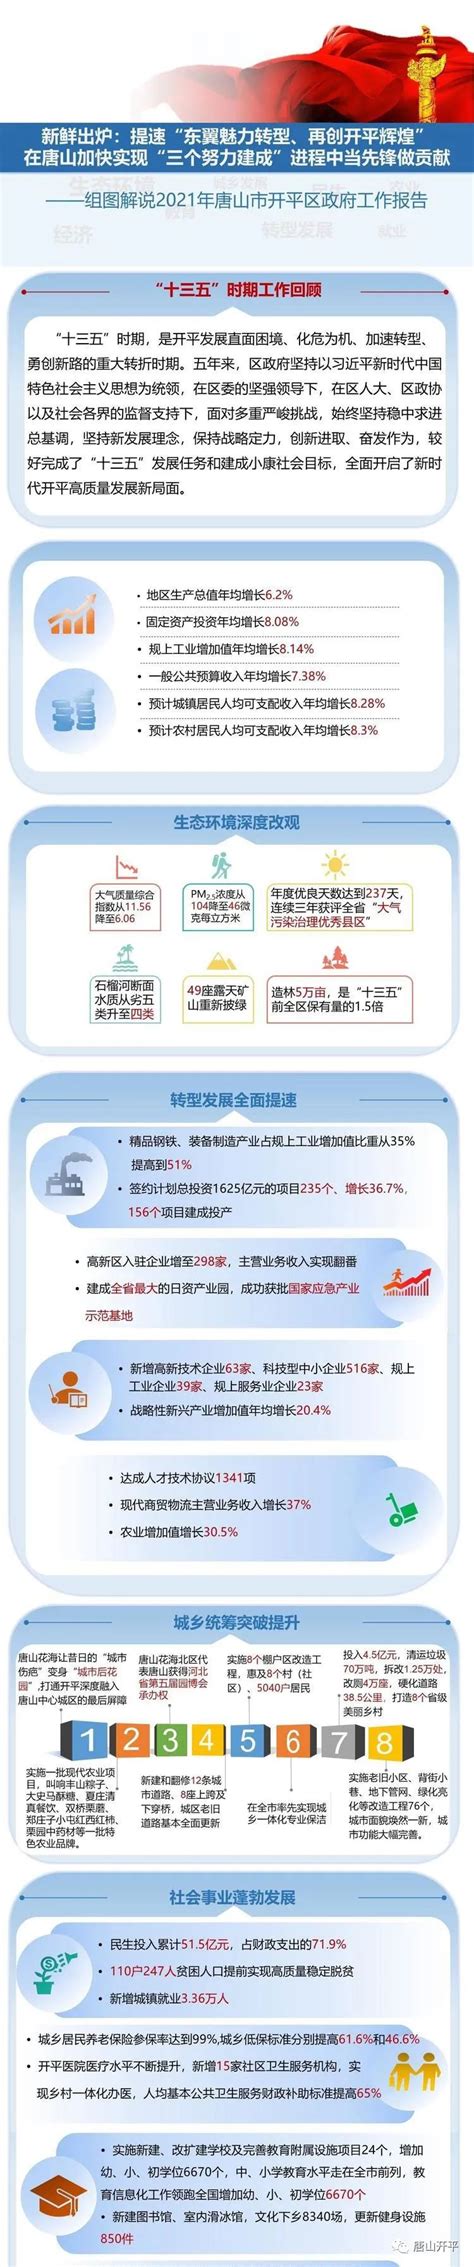 唐山开平区2022年城区节日亮化工程